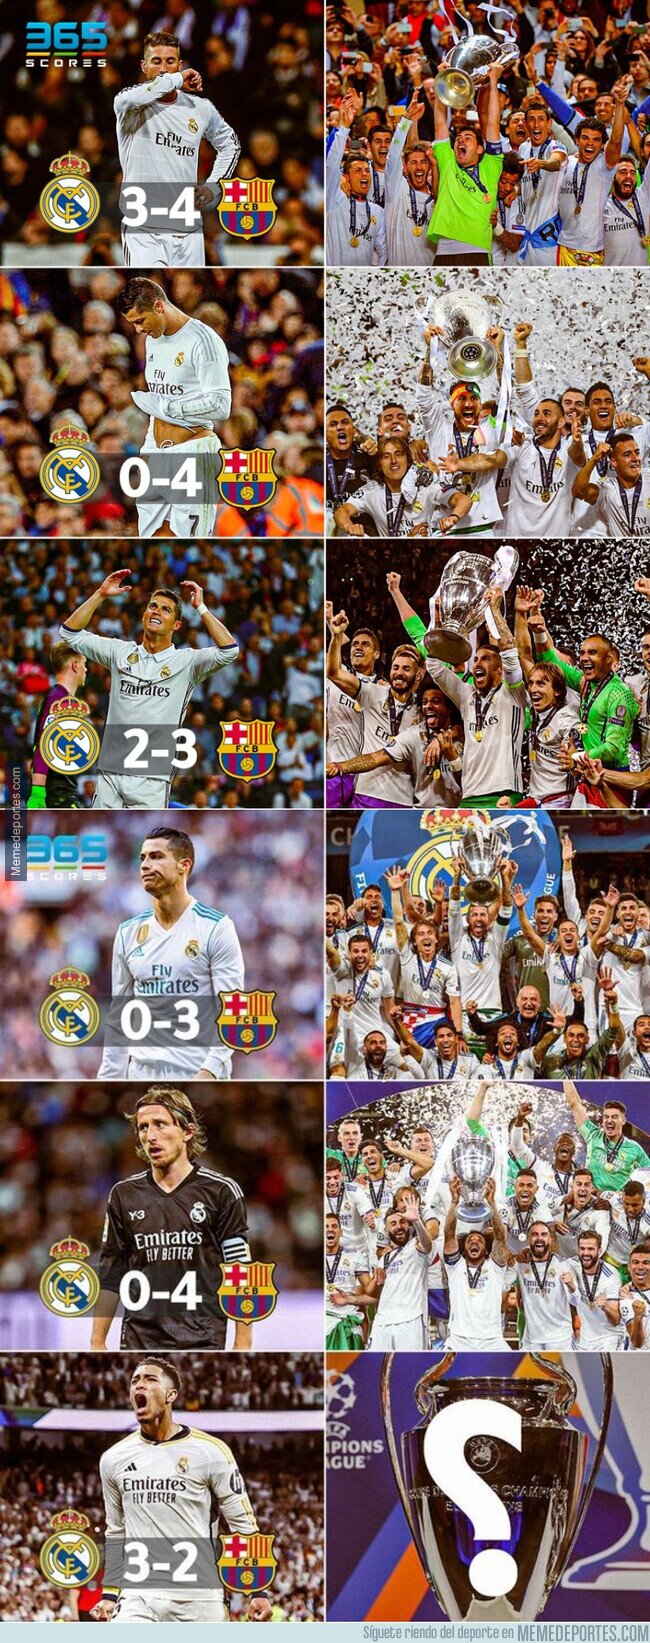 1204017 - El Madrid solo gana la Champions cuando el Barça gana en el Bernabéu. Malas noticias, madridistas